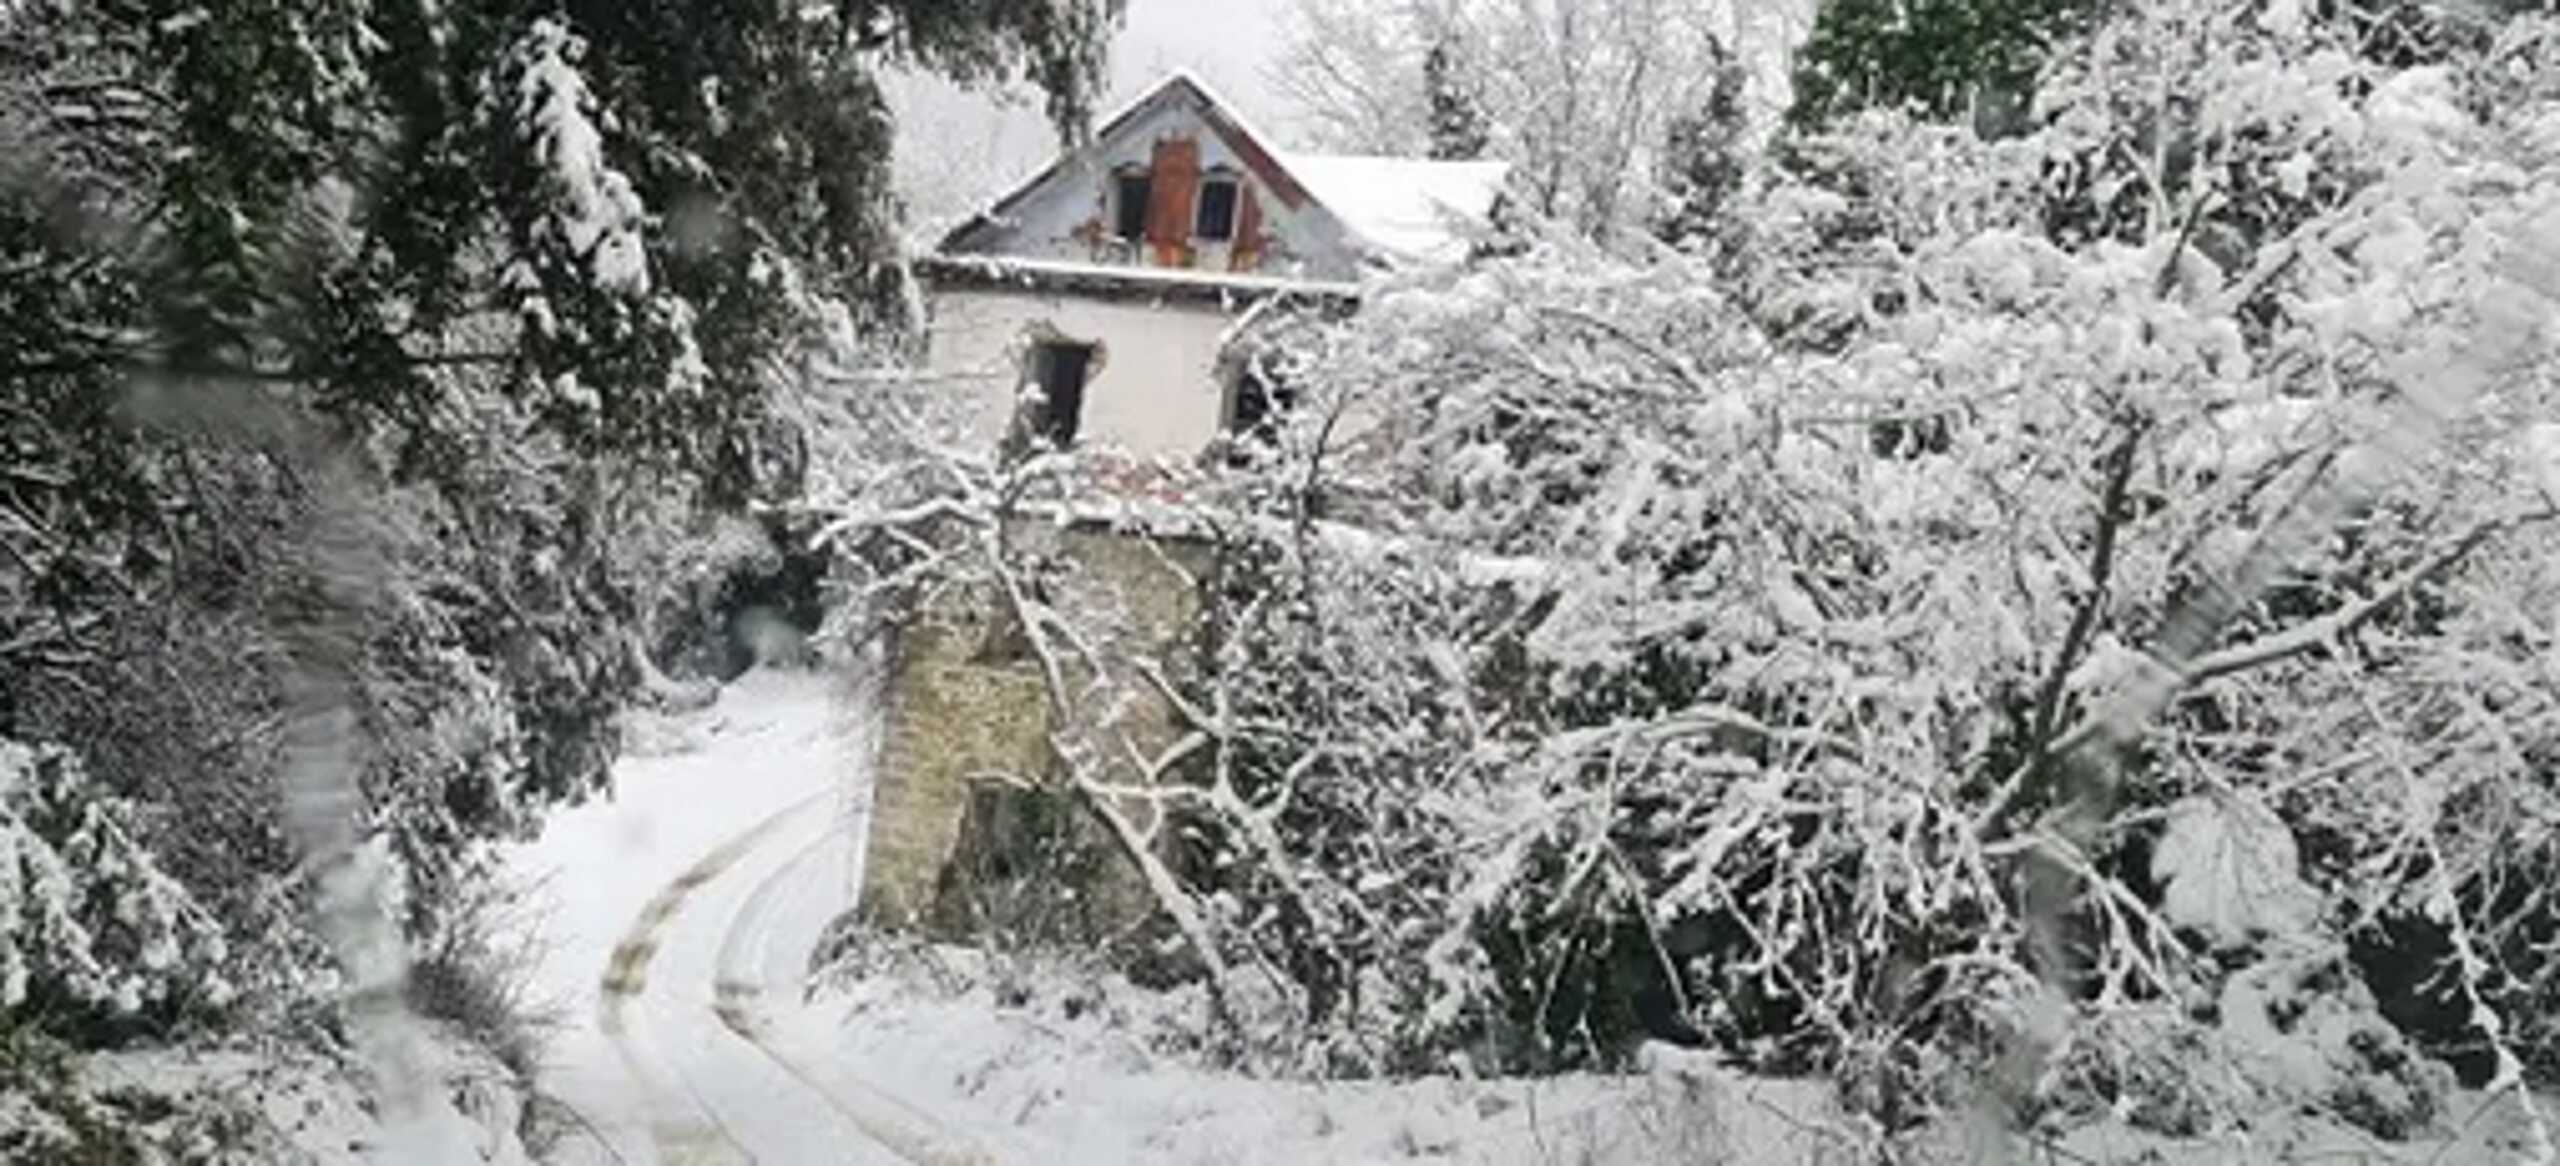 Καιρός – Άγιο Όρος: Χιόνια που σκεπάζουν τα πάντα στο Περιβόλι της Παναγιάς